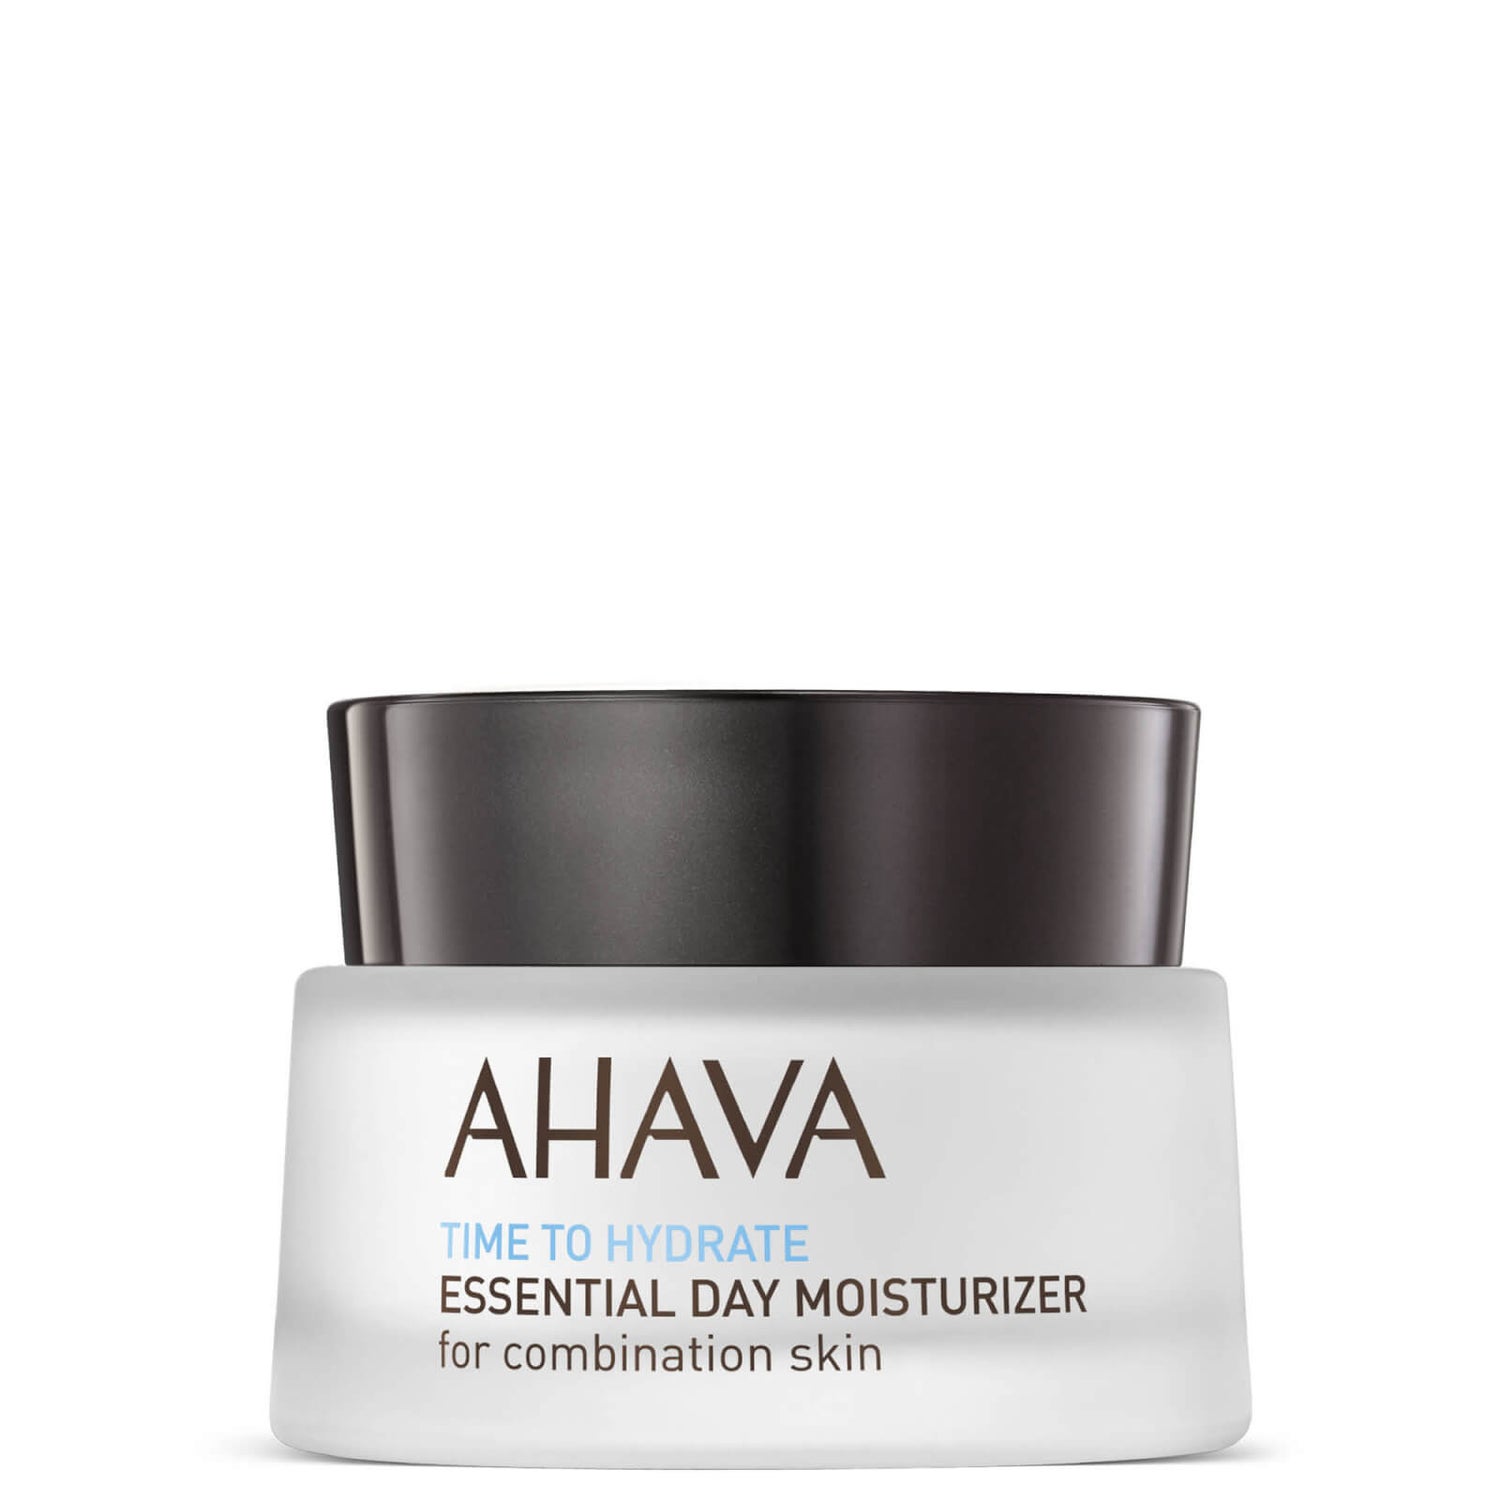 AHAVA 每日基础保湿霜 50ml | 适合混合性肌肤